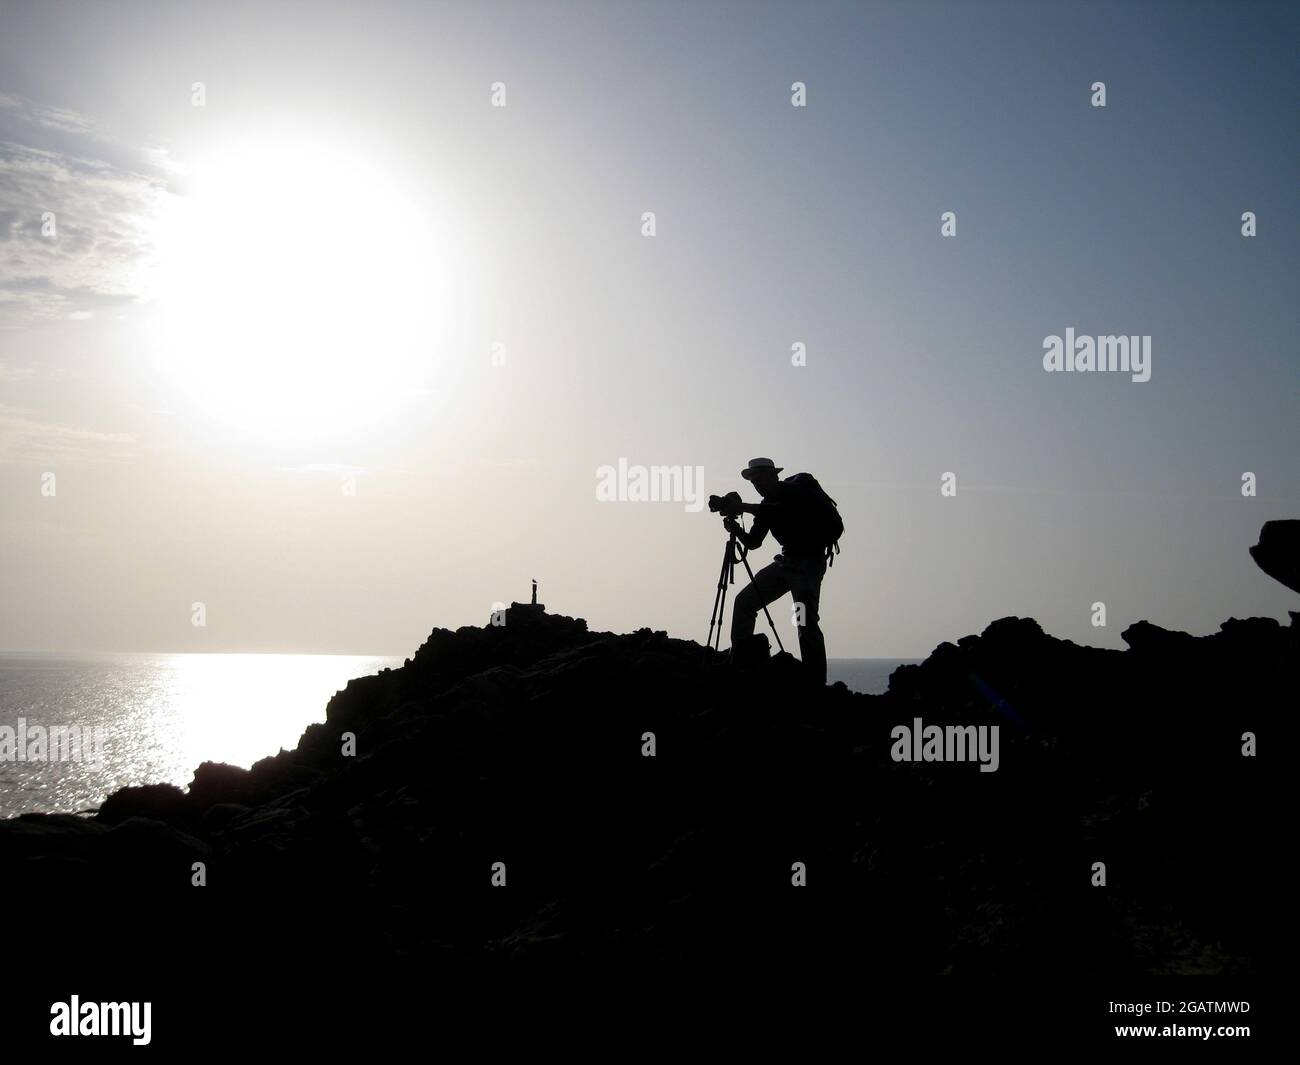 Il fotografo maschile si erge sulle rocce di Favàritx, Minorca, Spagna. Scatta fotografie con una macchina fotografica su un treppiede. Silhouette con mare in lontananza Foto Stock